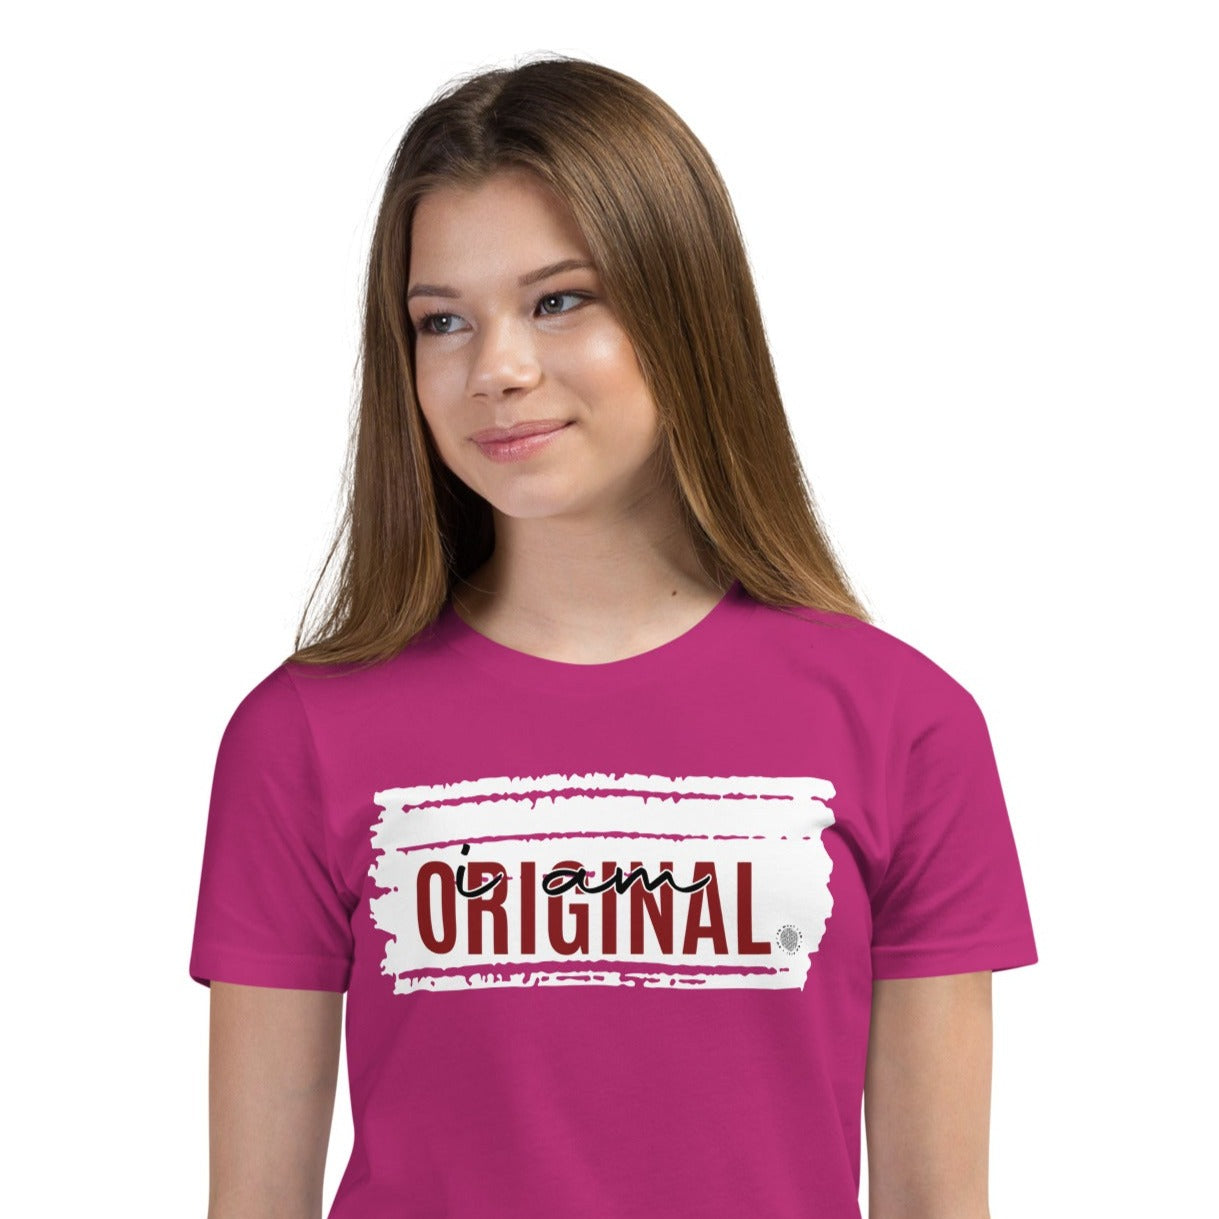 I Am Original Youth T-Shirt berry